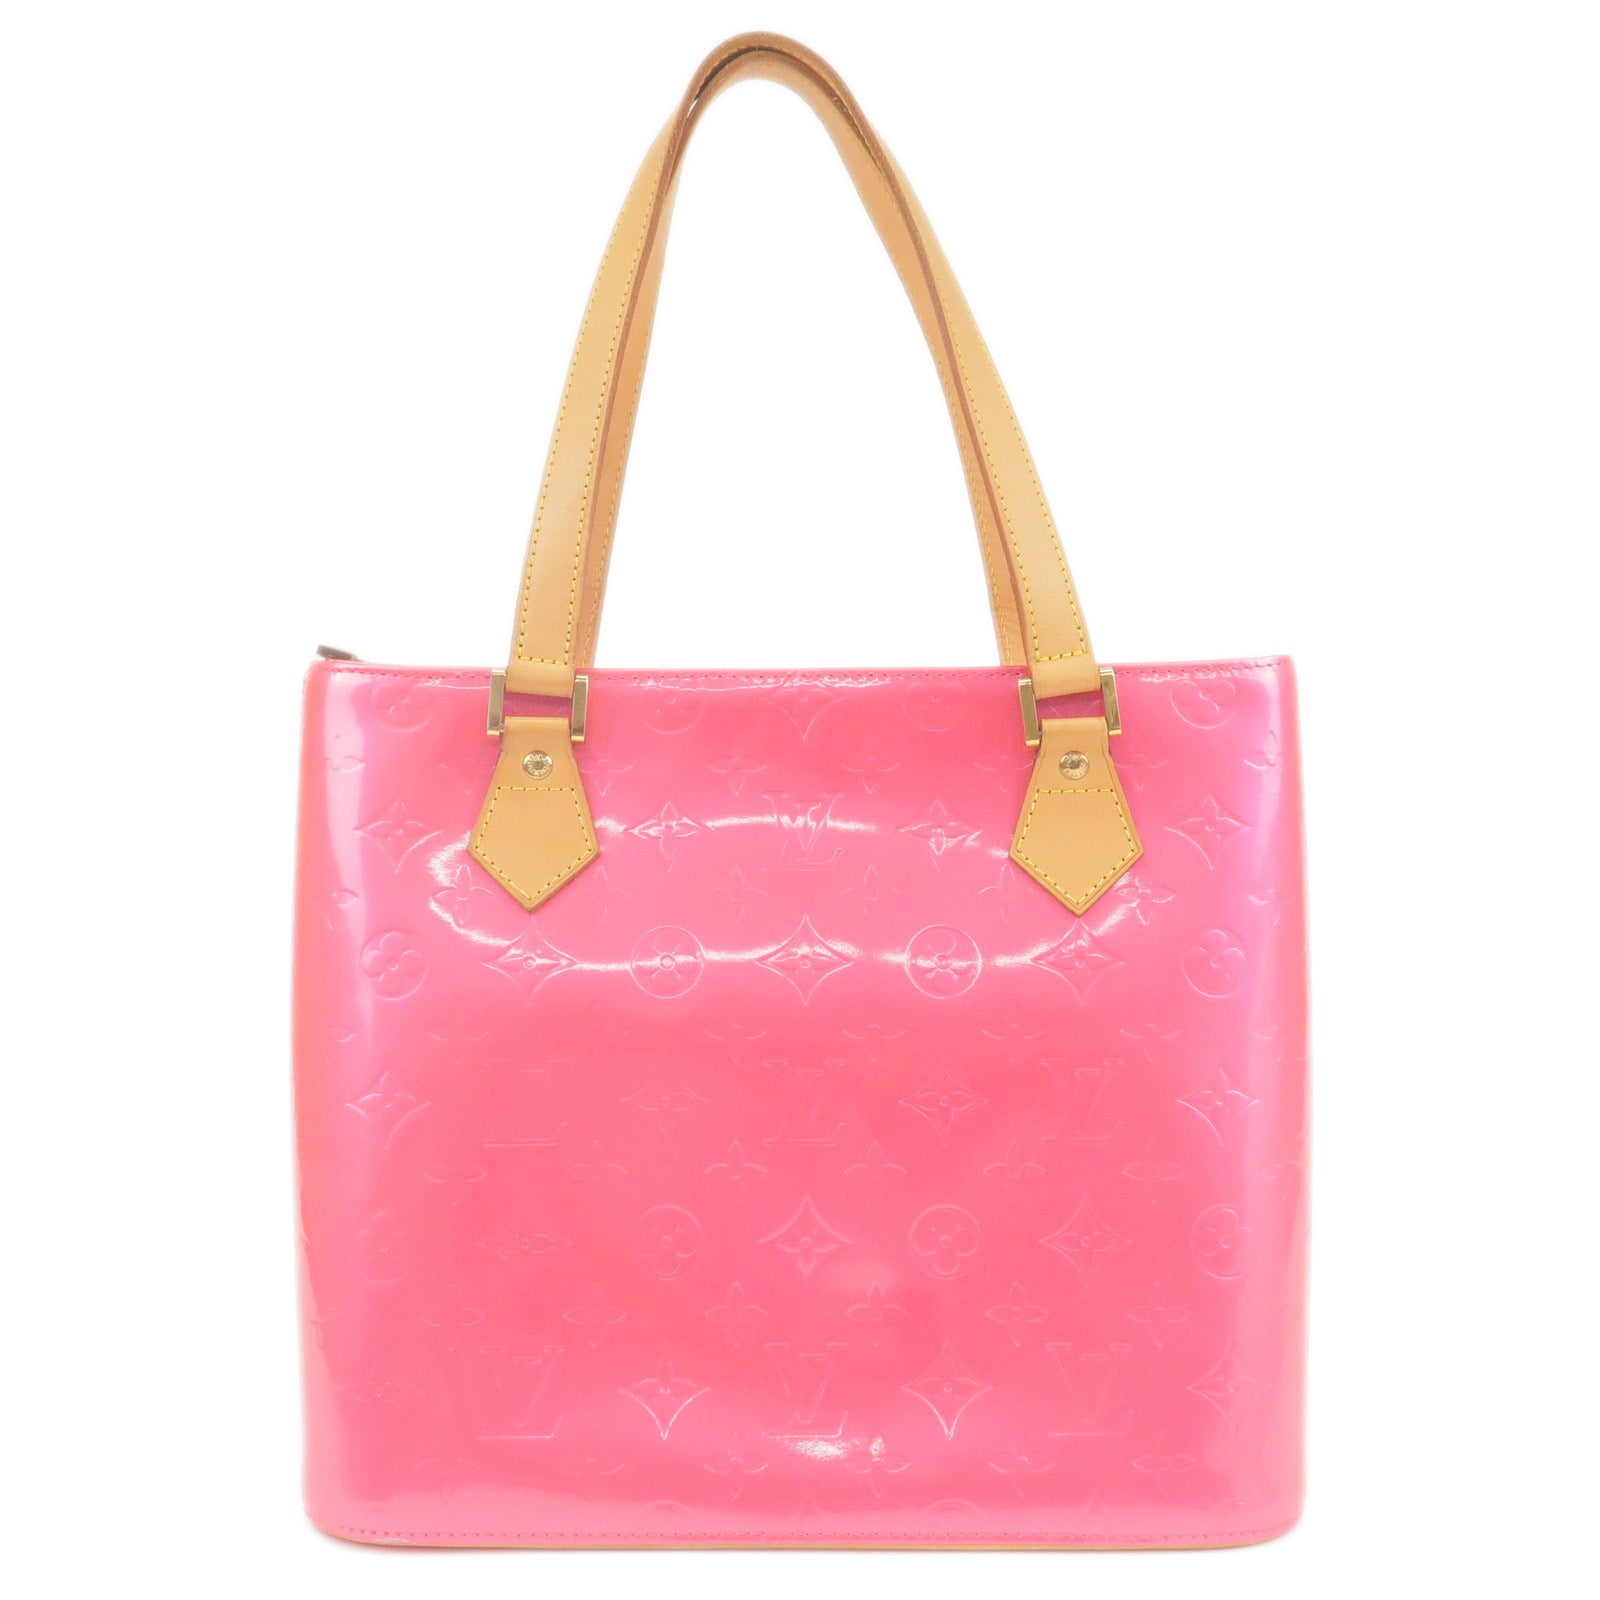 Louis-Vuitton-Monogram-Vernis-Houston-Tote-Bag-Fuchsia-Pink-M91219